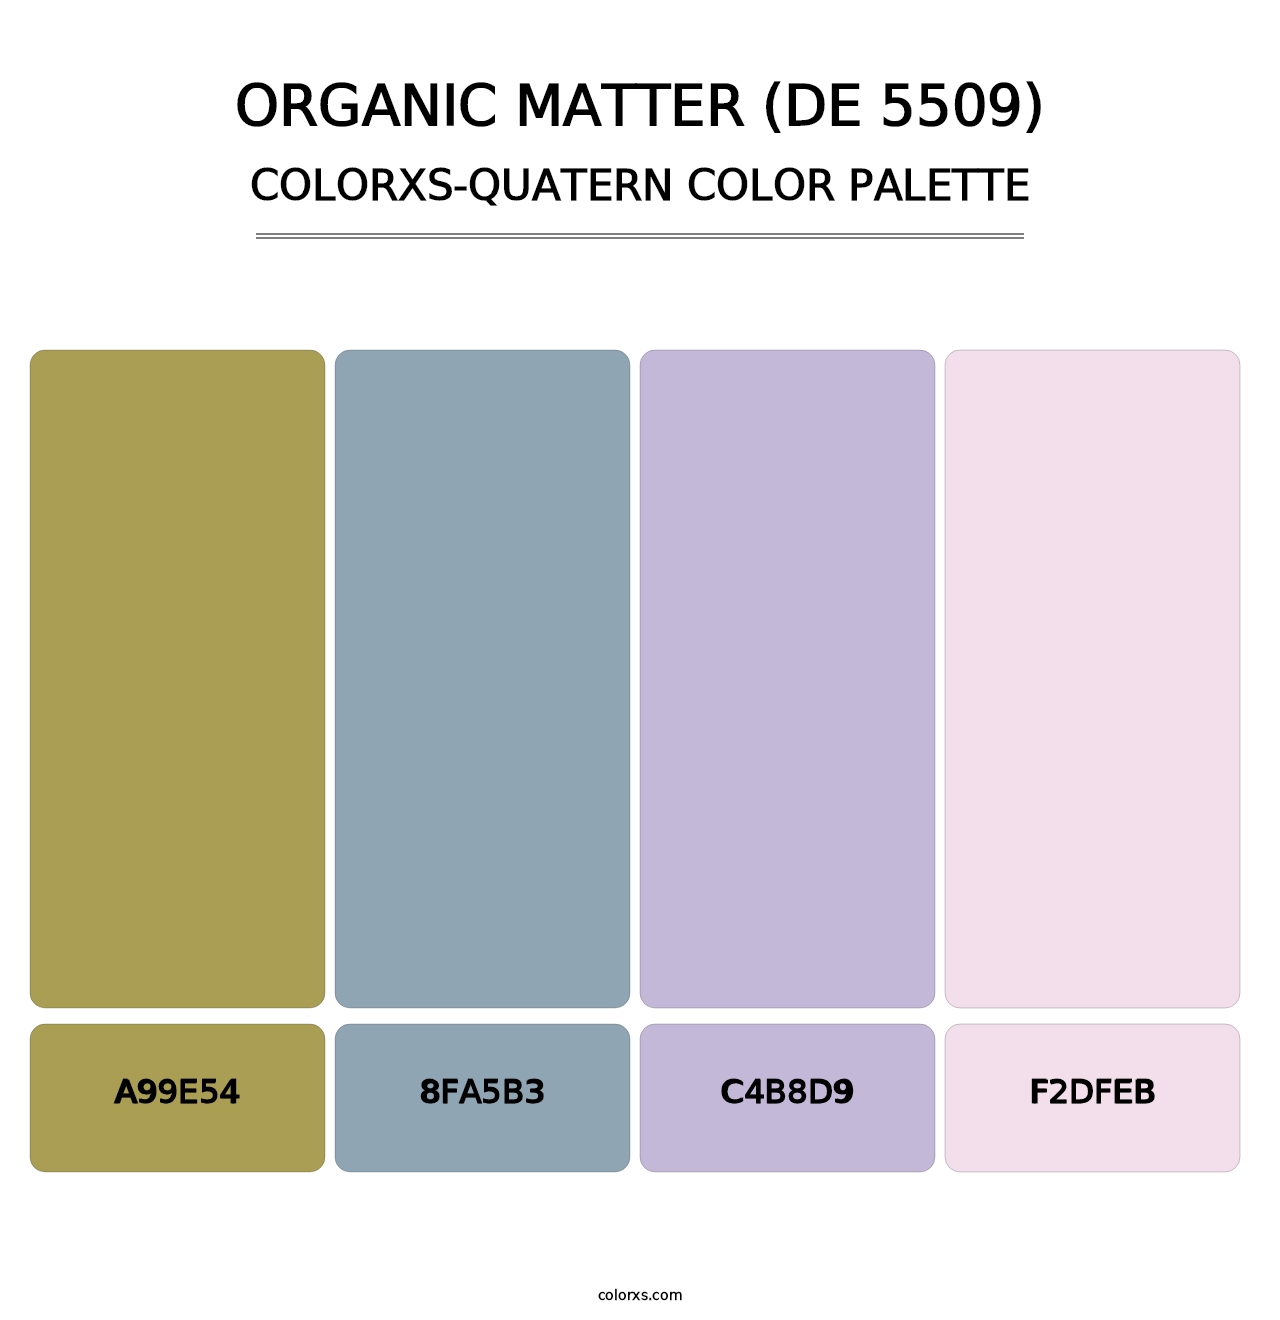 Organic Matter (DE 5509) - Colorxs Quatern Palette